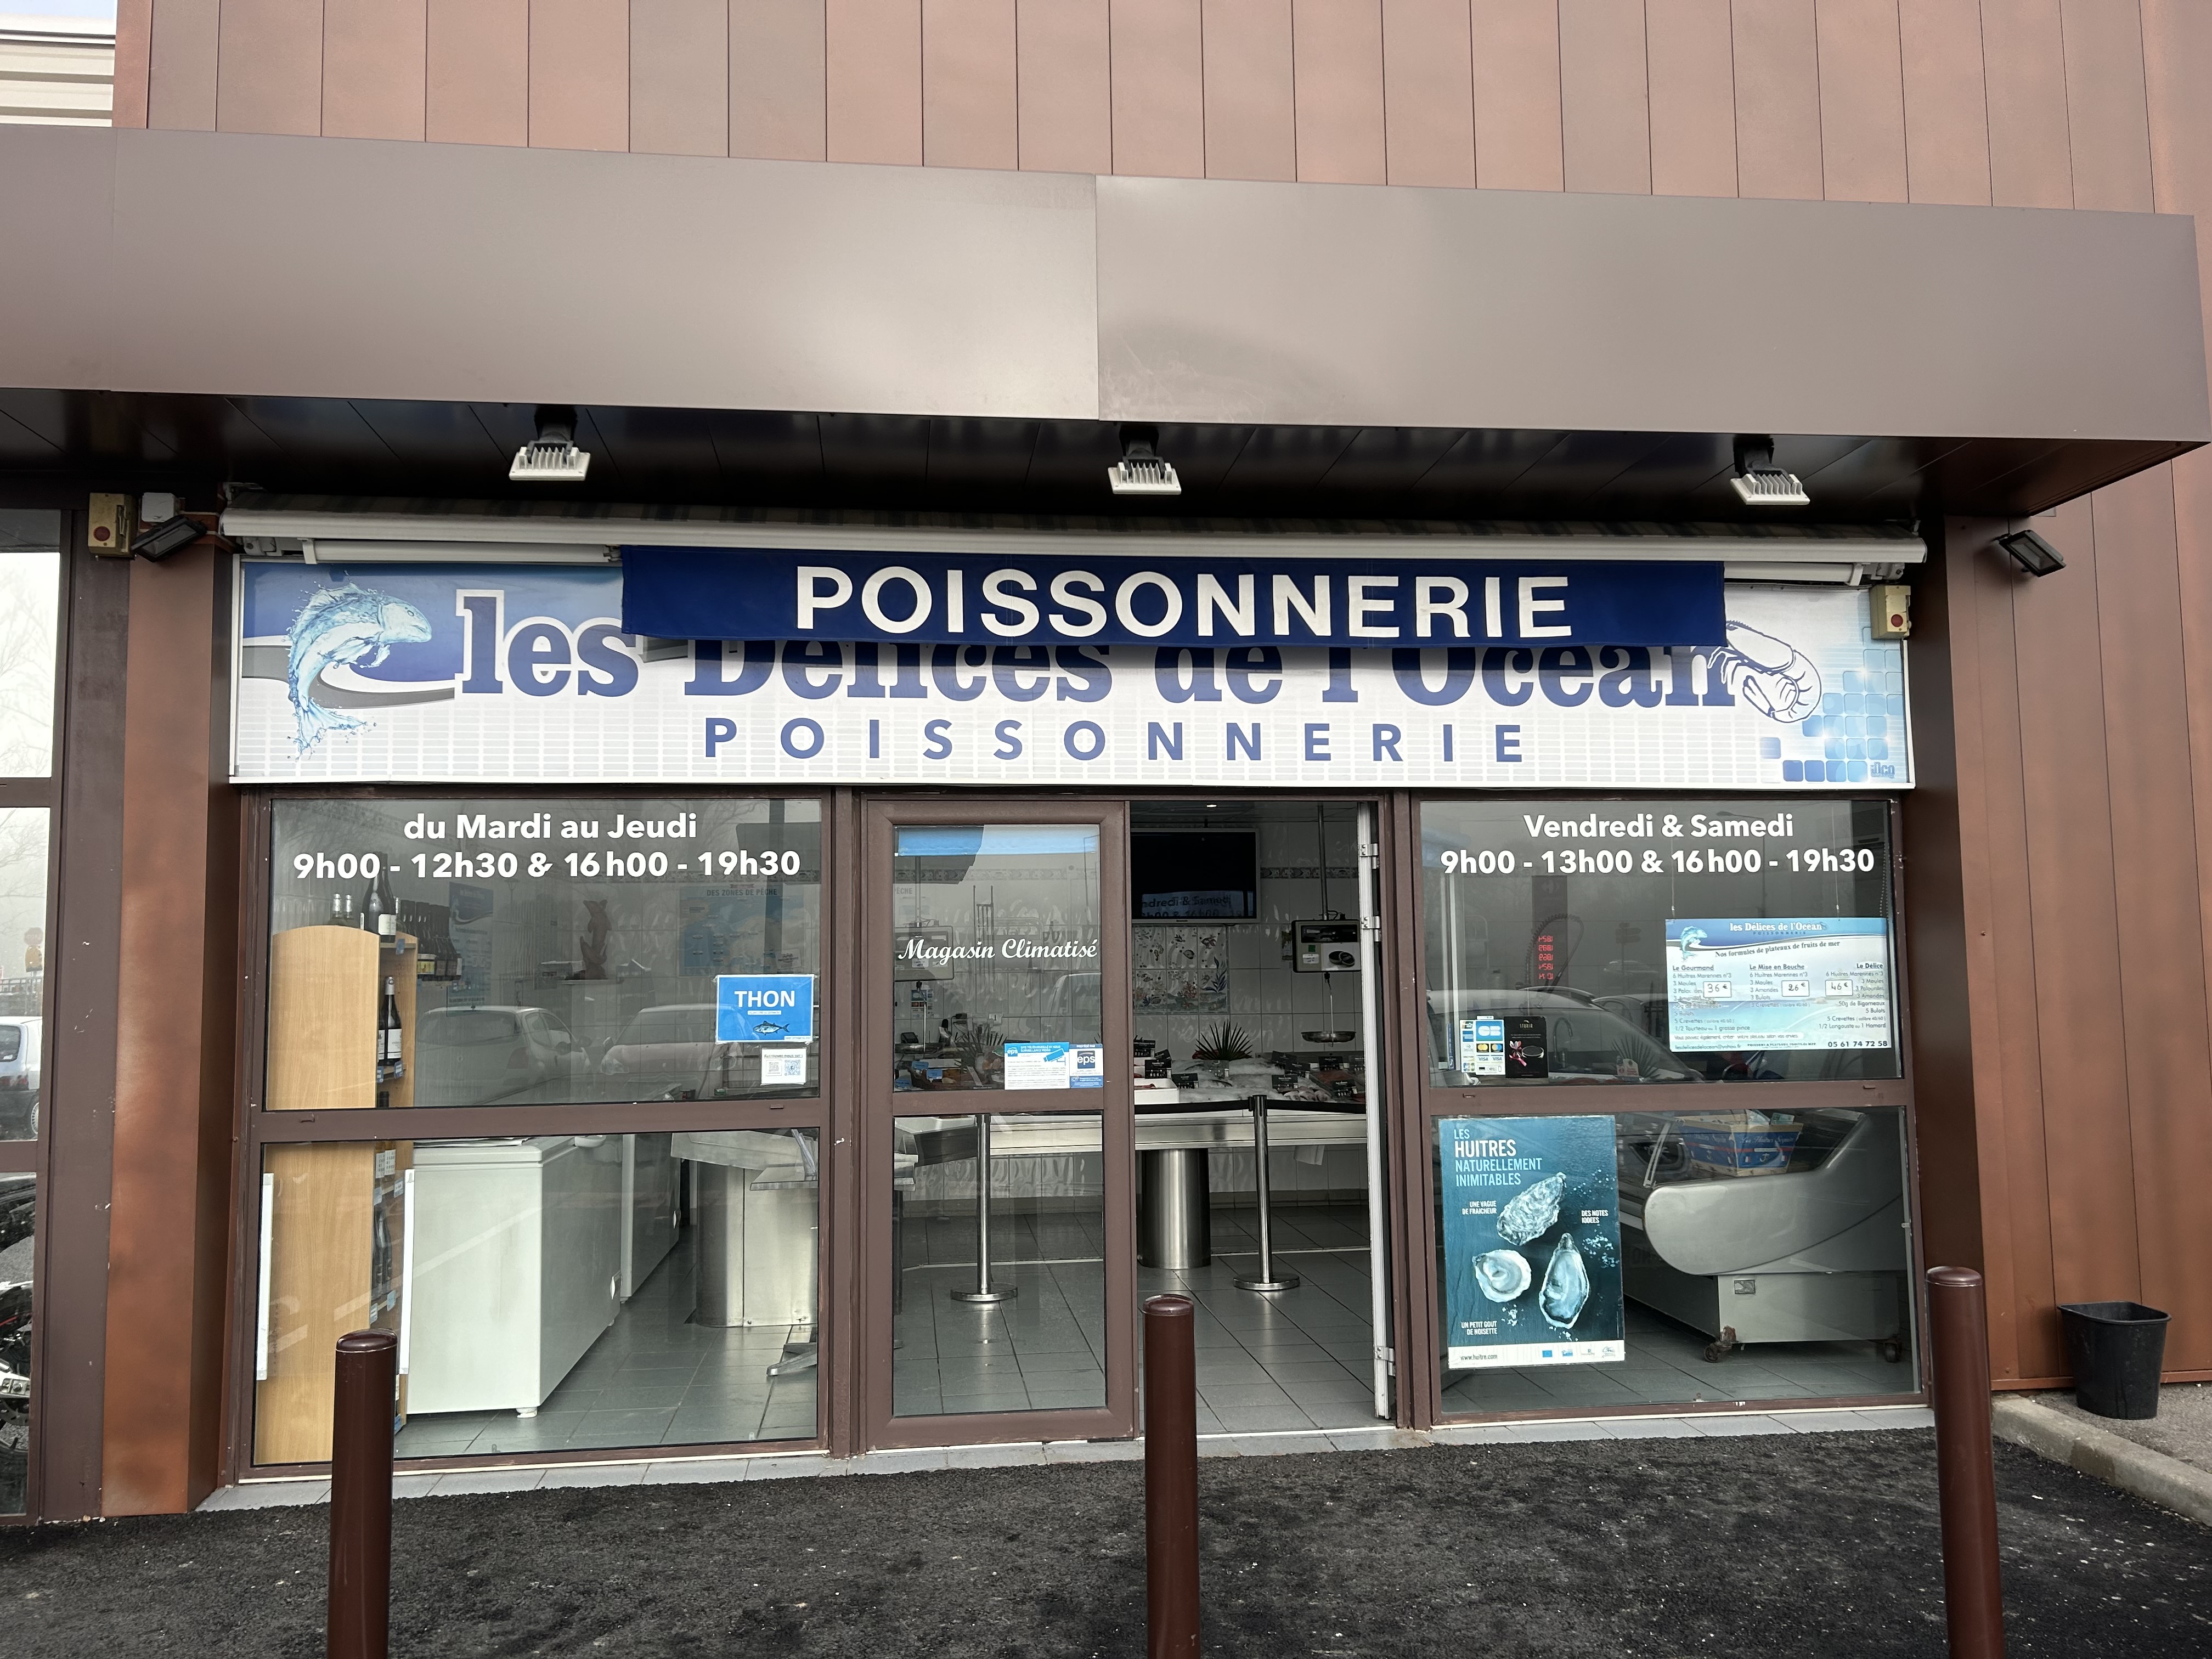 Vente, suite départ à la retraite après 16 ans d’activité, d’un fond de commerce de poissonnerie/traiteur située dans la commune active de Pechbonnieu à la périphérie de Toulouse.
Composée d’une surface de vente de 45m2, d’une chambre froide de 10m3, d’une réserve en mezzanine de 55m2, d’un étal inox de 5m, d’une vitrine réfrigérée de 1,55m2, d’une machine à glace de 900kg/24h et d’une climatisation.
Située à côté d’un supermarché Carrefour Market, un parking d’environ 150 places est à la disposition de la clientèle.